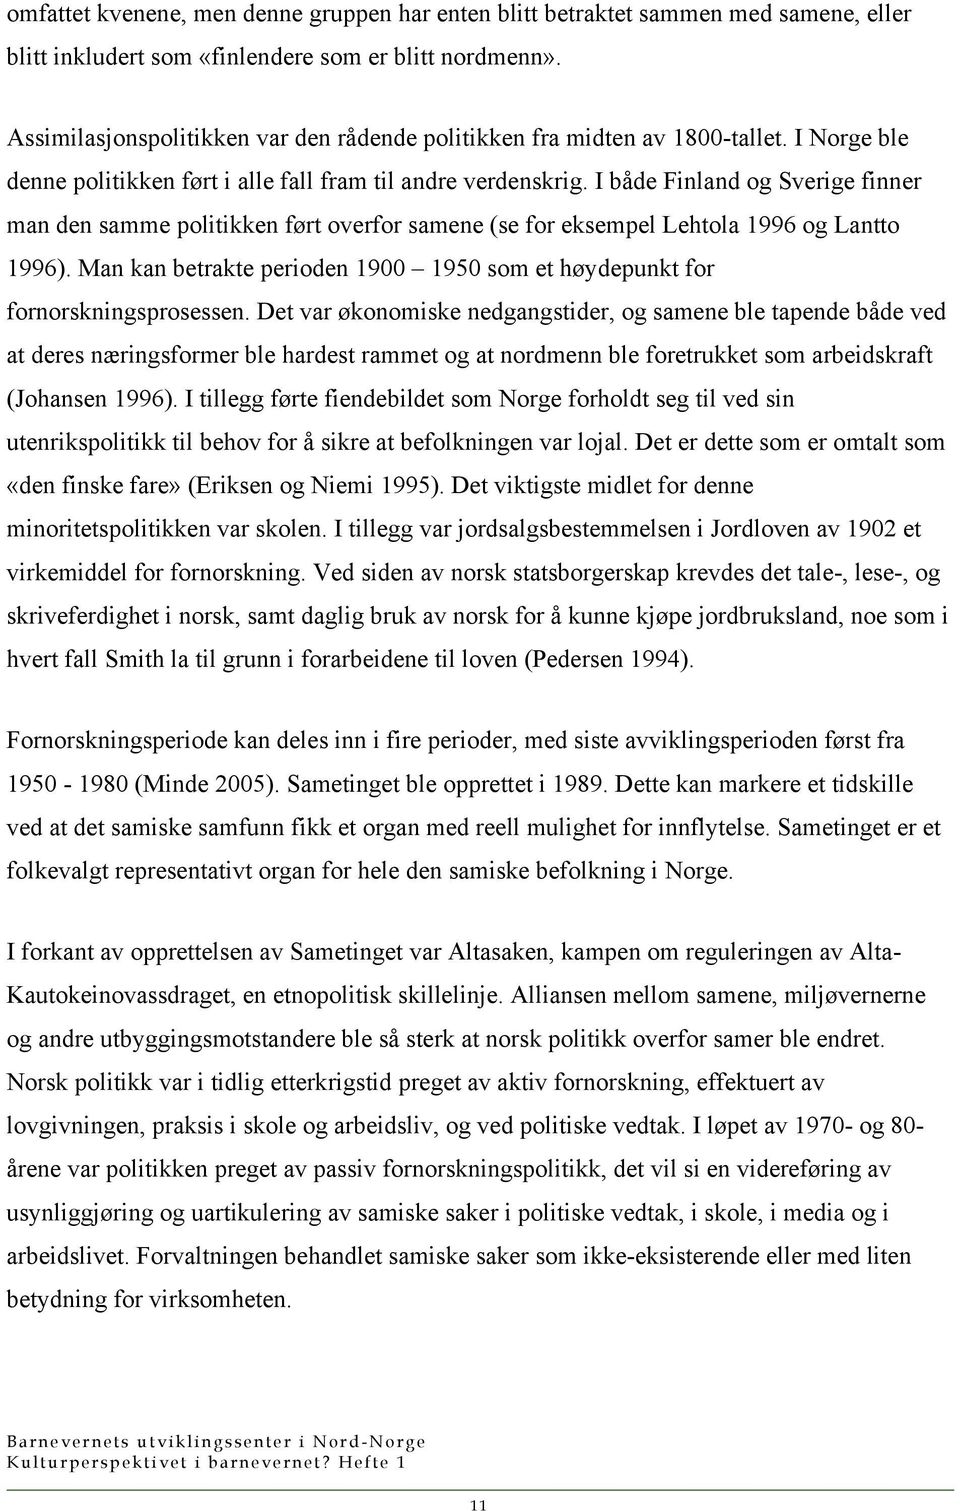 I både Finland og Sverige finner man den samme politikken ført overfor samene (se for eksempel Lehtola 1996 og Lantto 1996).